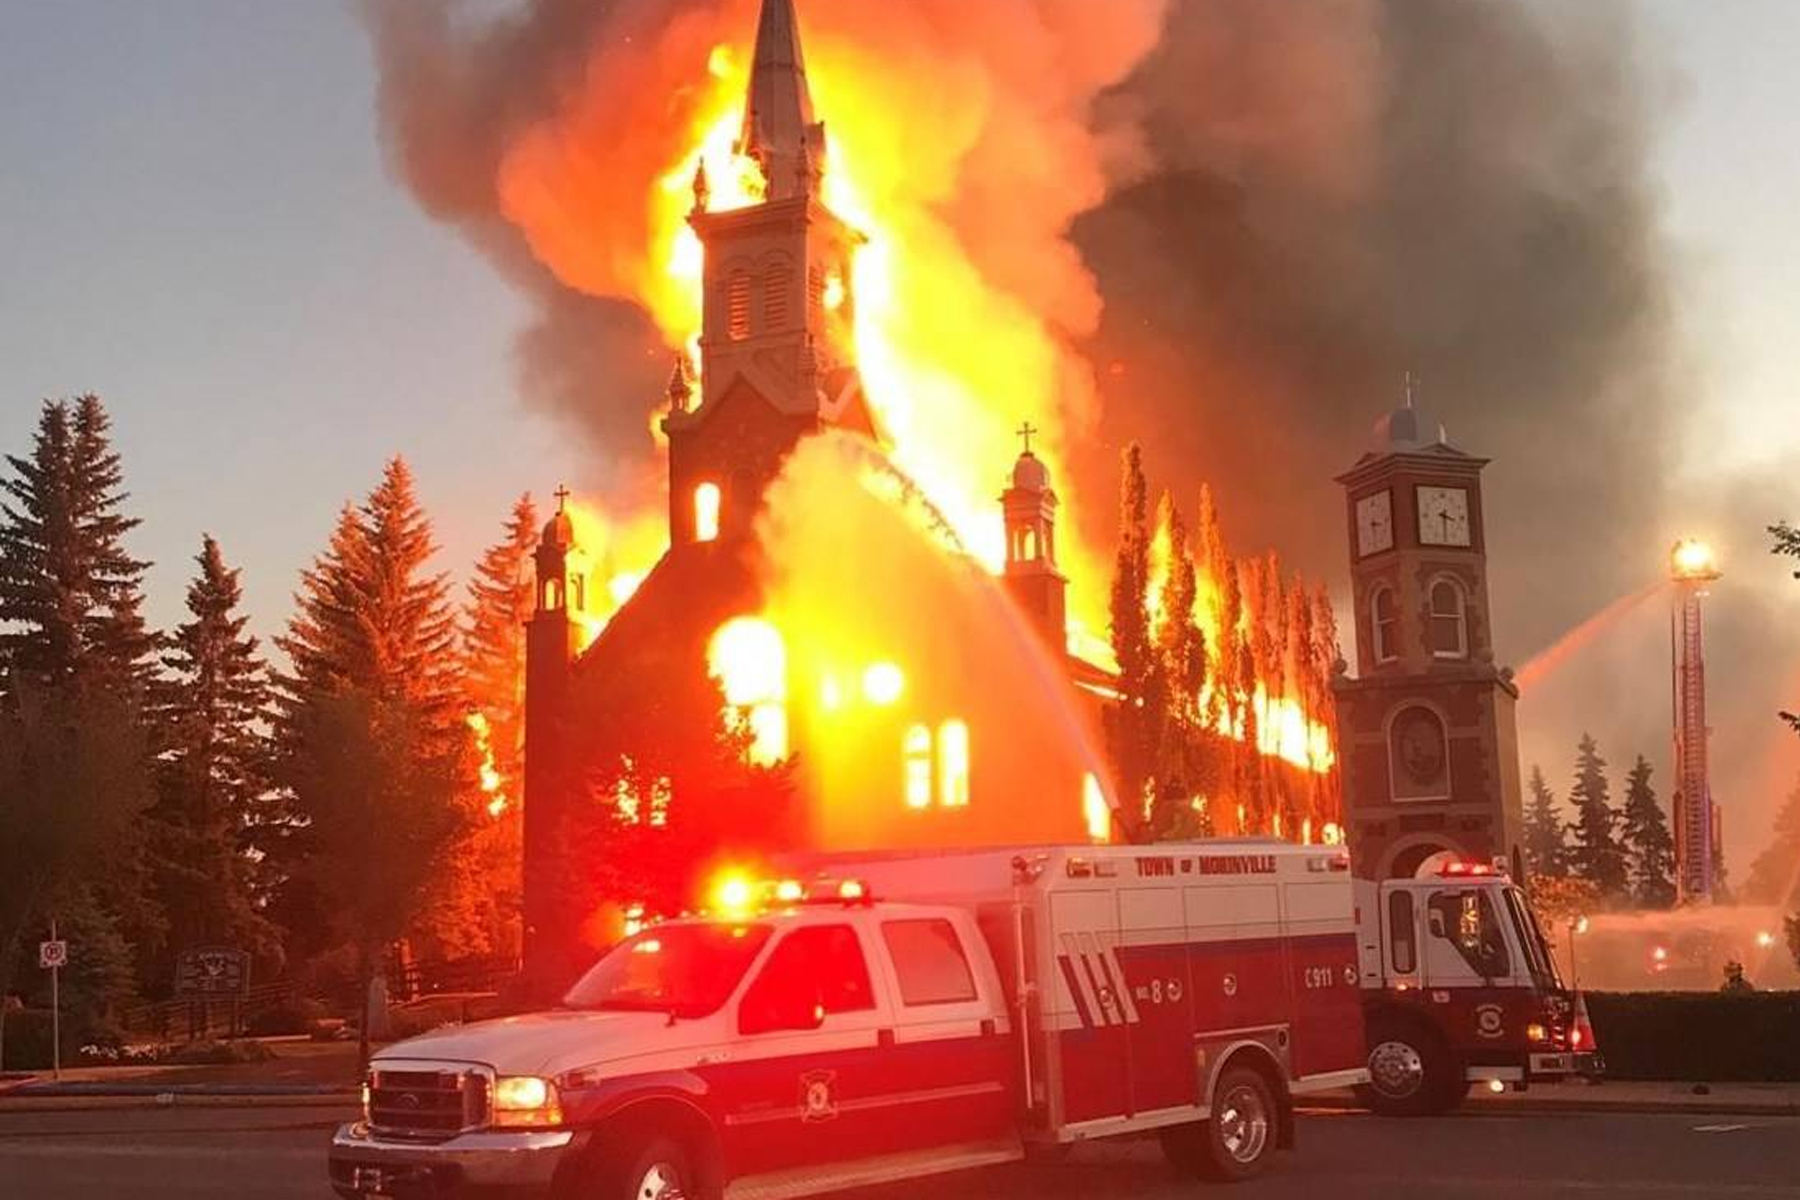 کلیسای کاتولیک مورینویل در شمال ادمنتون پایتخت آلبرتا در آتش سوخت و نابود شد